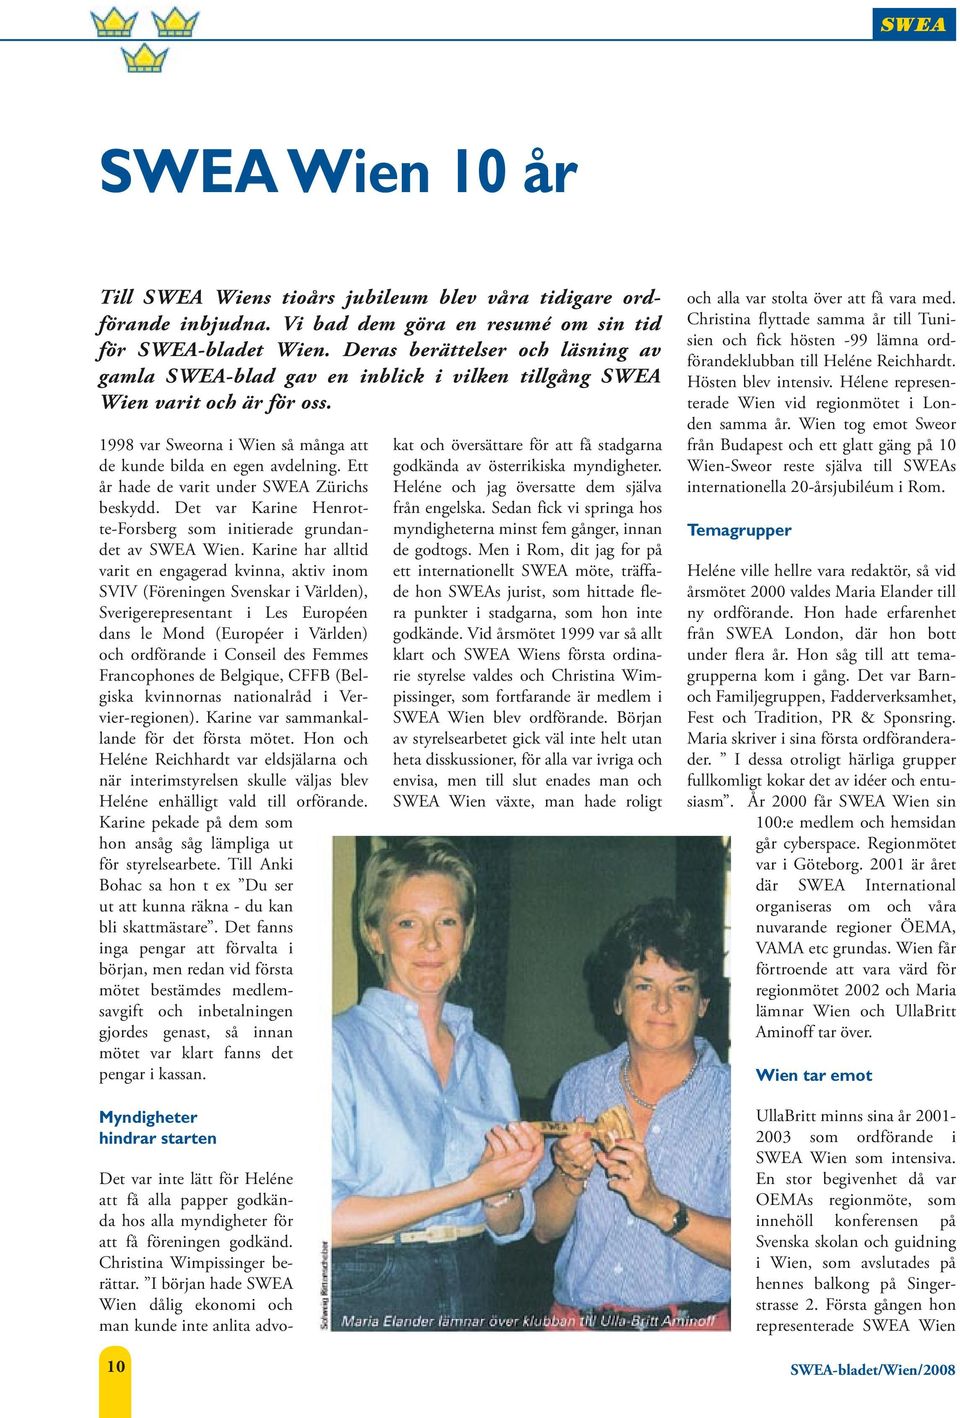 Ett år hade de varit under SWEA Zürichs beskydd. Det var Karine Henrotte-Forsberg som initierade grundandet av SWEA Wien.